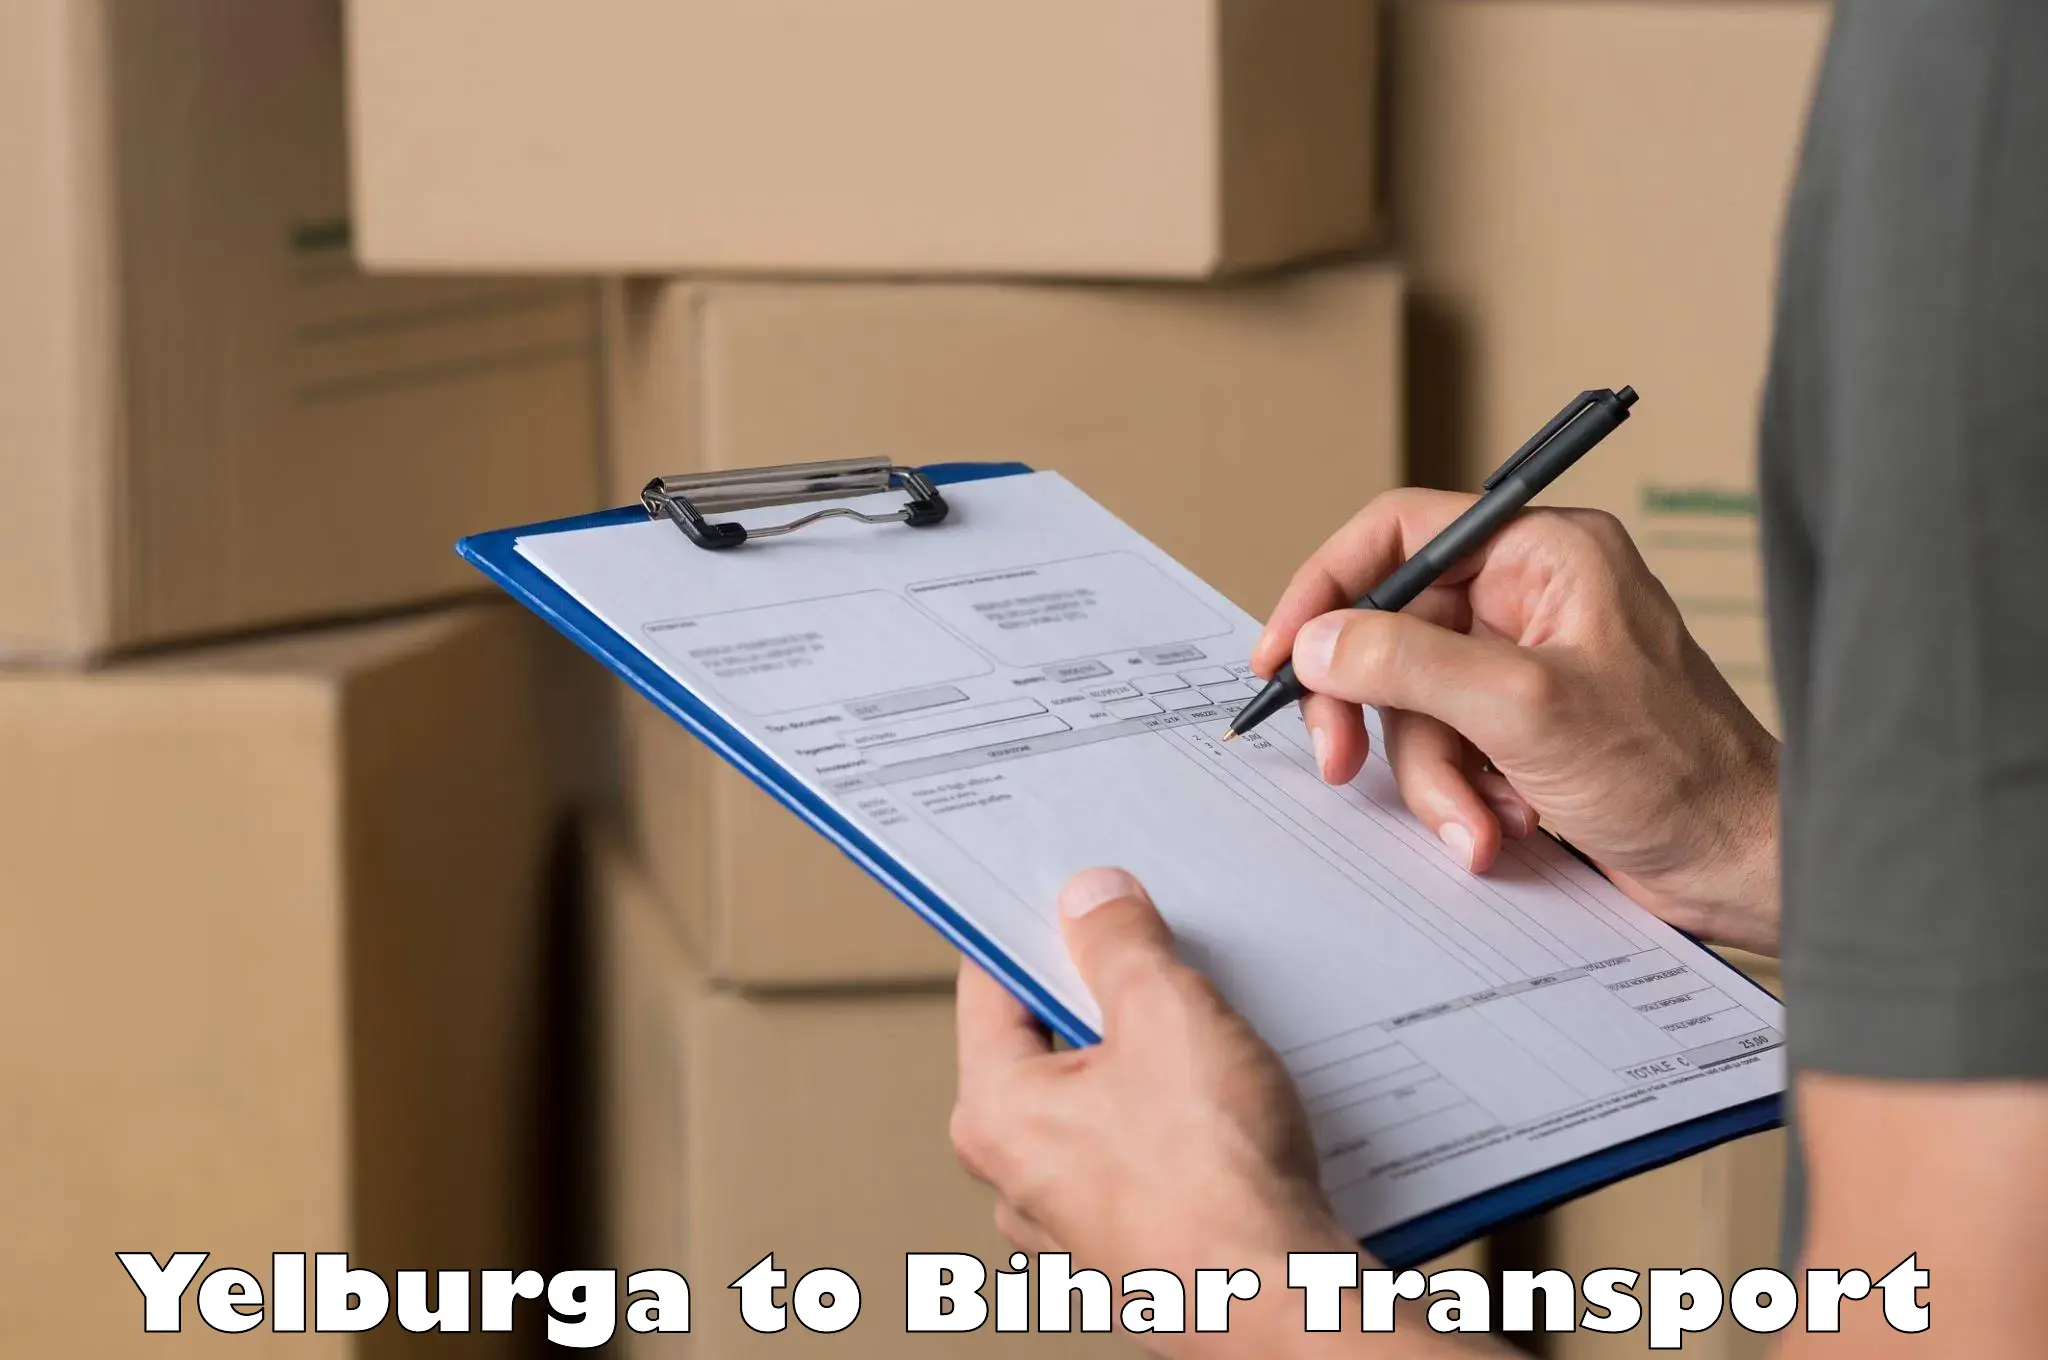 Furniture transport service in Yelburga to Baisi